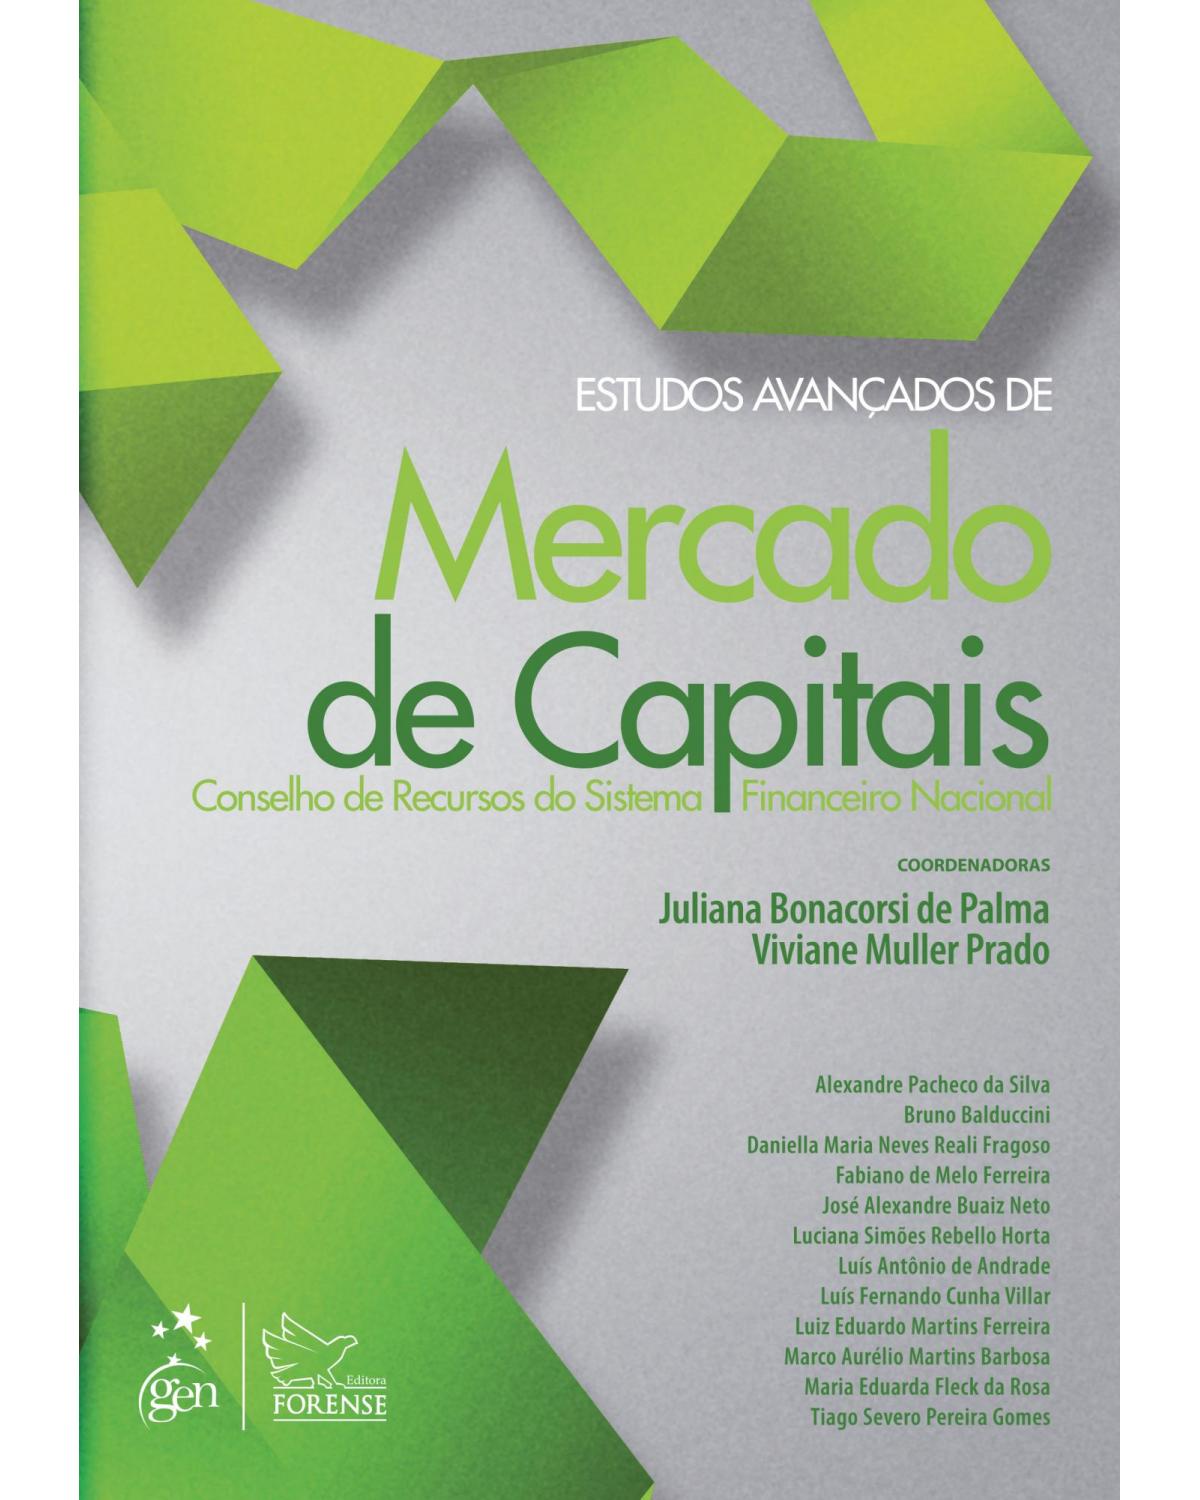 Estudos avançados de mercado de capitais - Conselho de recursos do sistema financeiro nacional - 1ª Edição | 2013